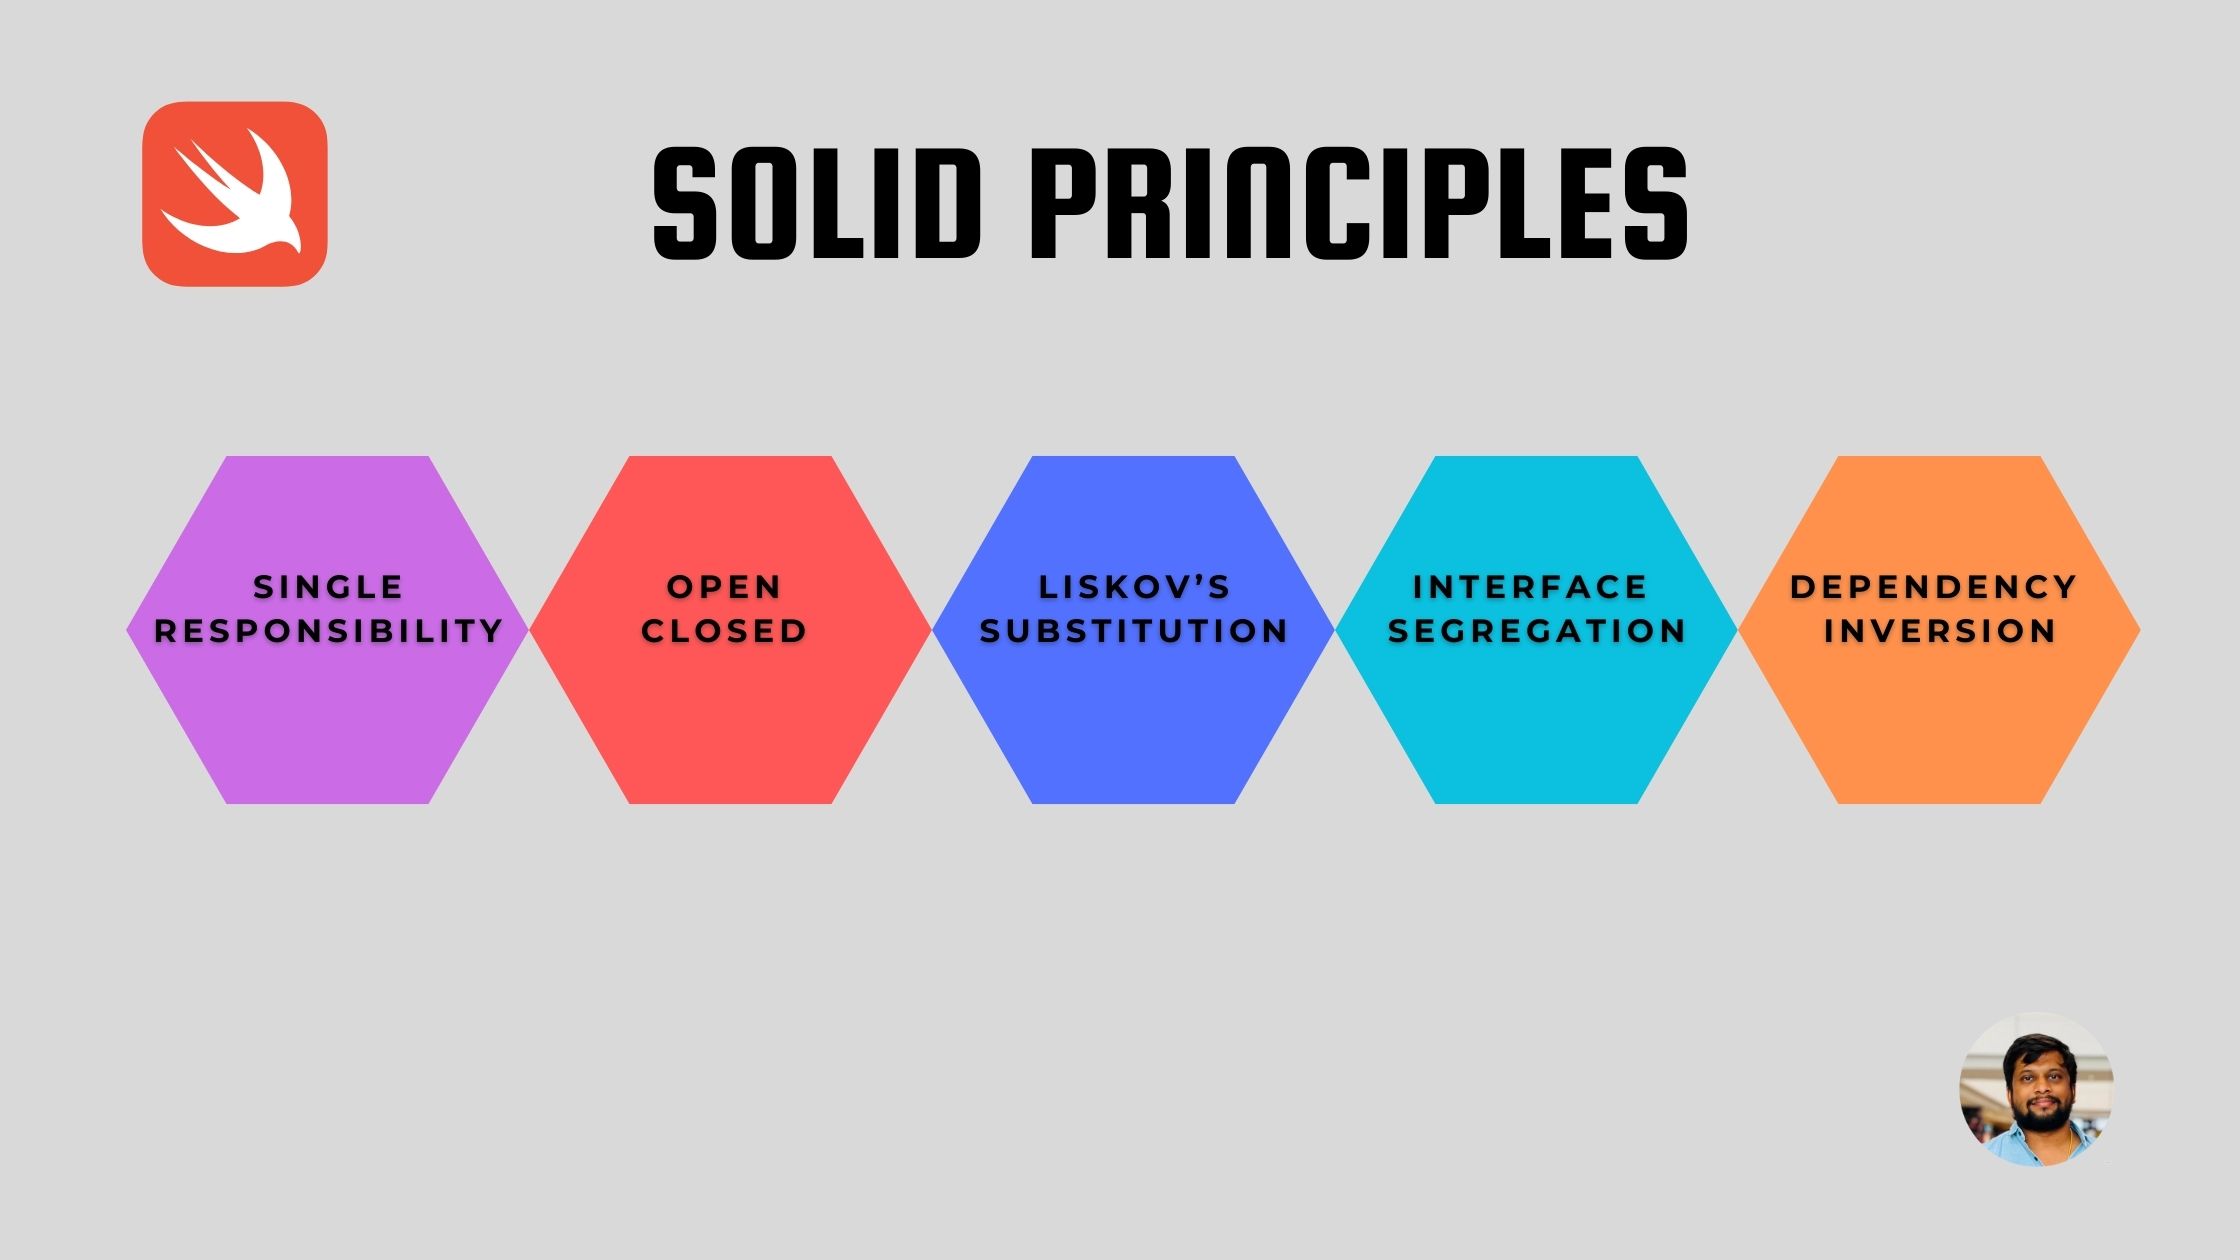 Demo of SOLID Principles